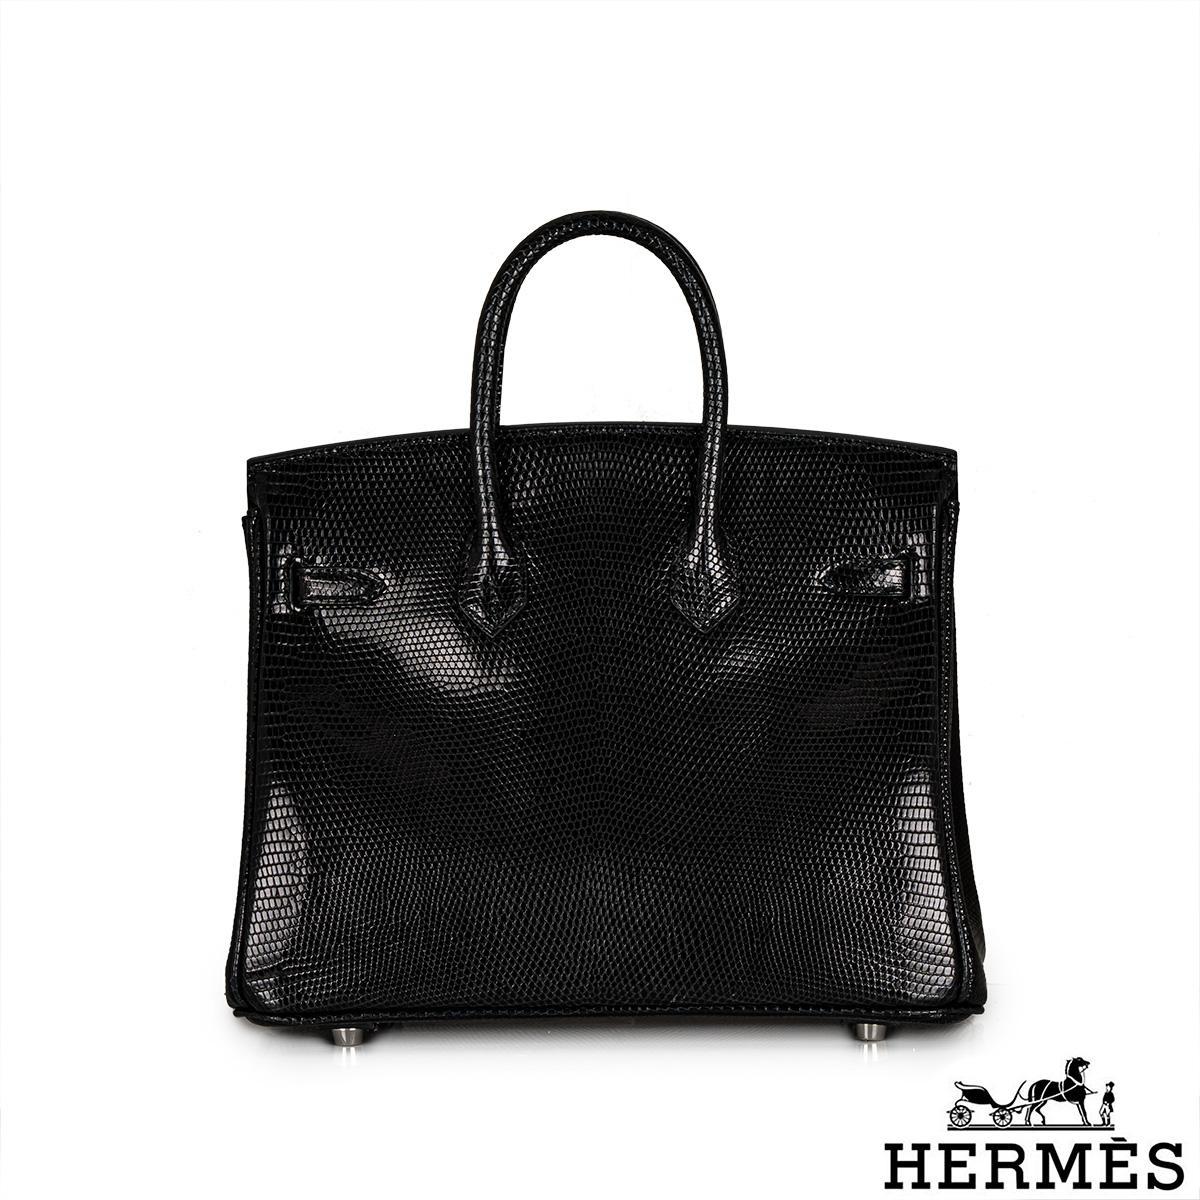 Un sac à main Hermès Exotic Birkin 25cm très séduisant. L'extérieur de ce Birkin exotique est en Noir Lezard Niloticus Lisse brillant avec des surpiqûres ton sur ton. Il est orné de ferrures en palladium, de deux poignées supérieures et d'une